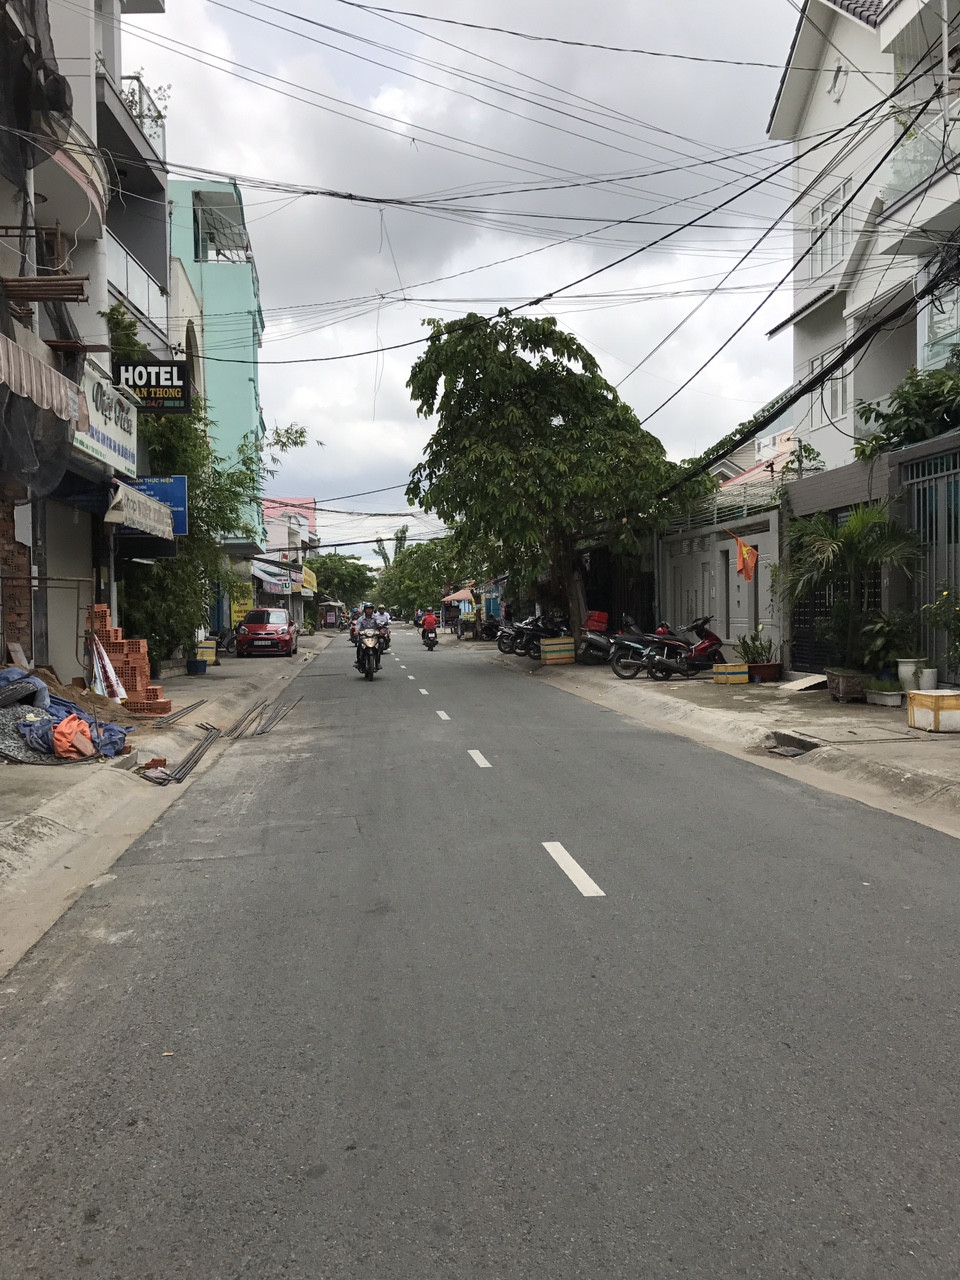 Bán nhà mặt tiền đường Số 14A, Phường Tân Thuận Tây, Quận 7